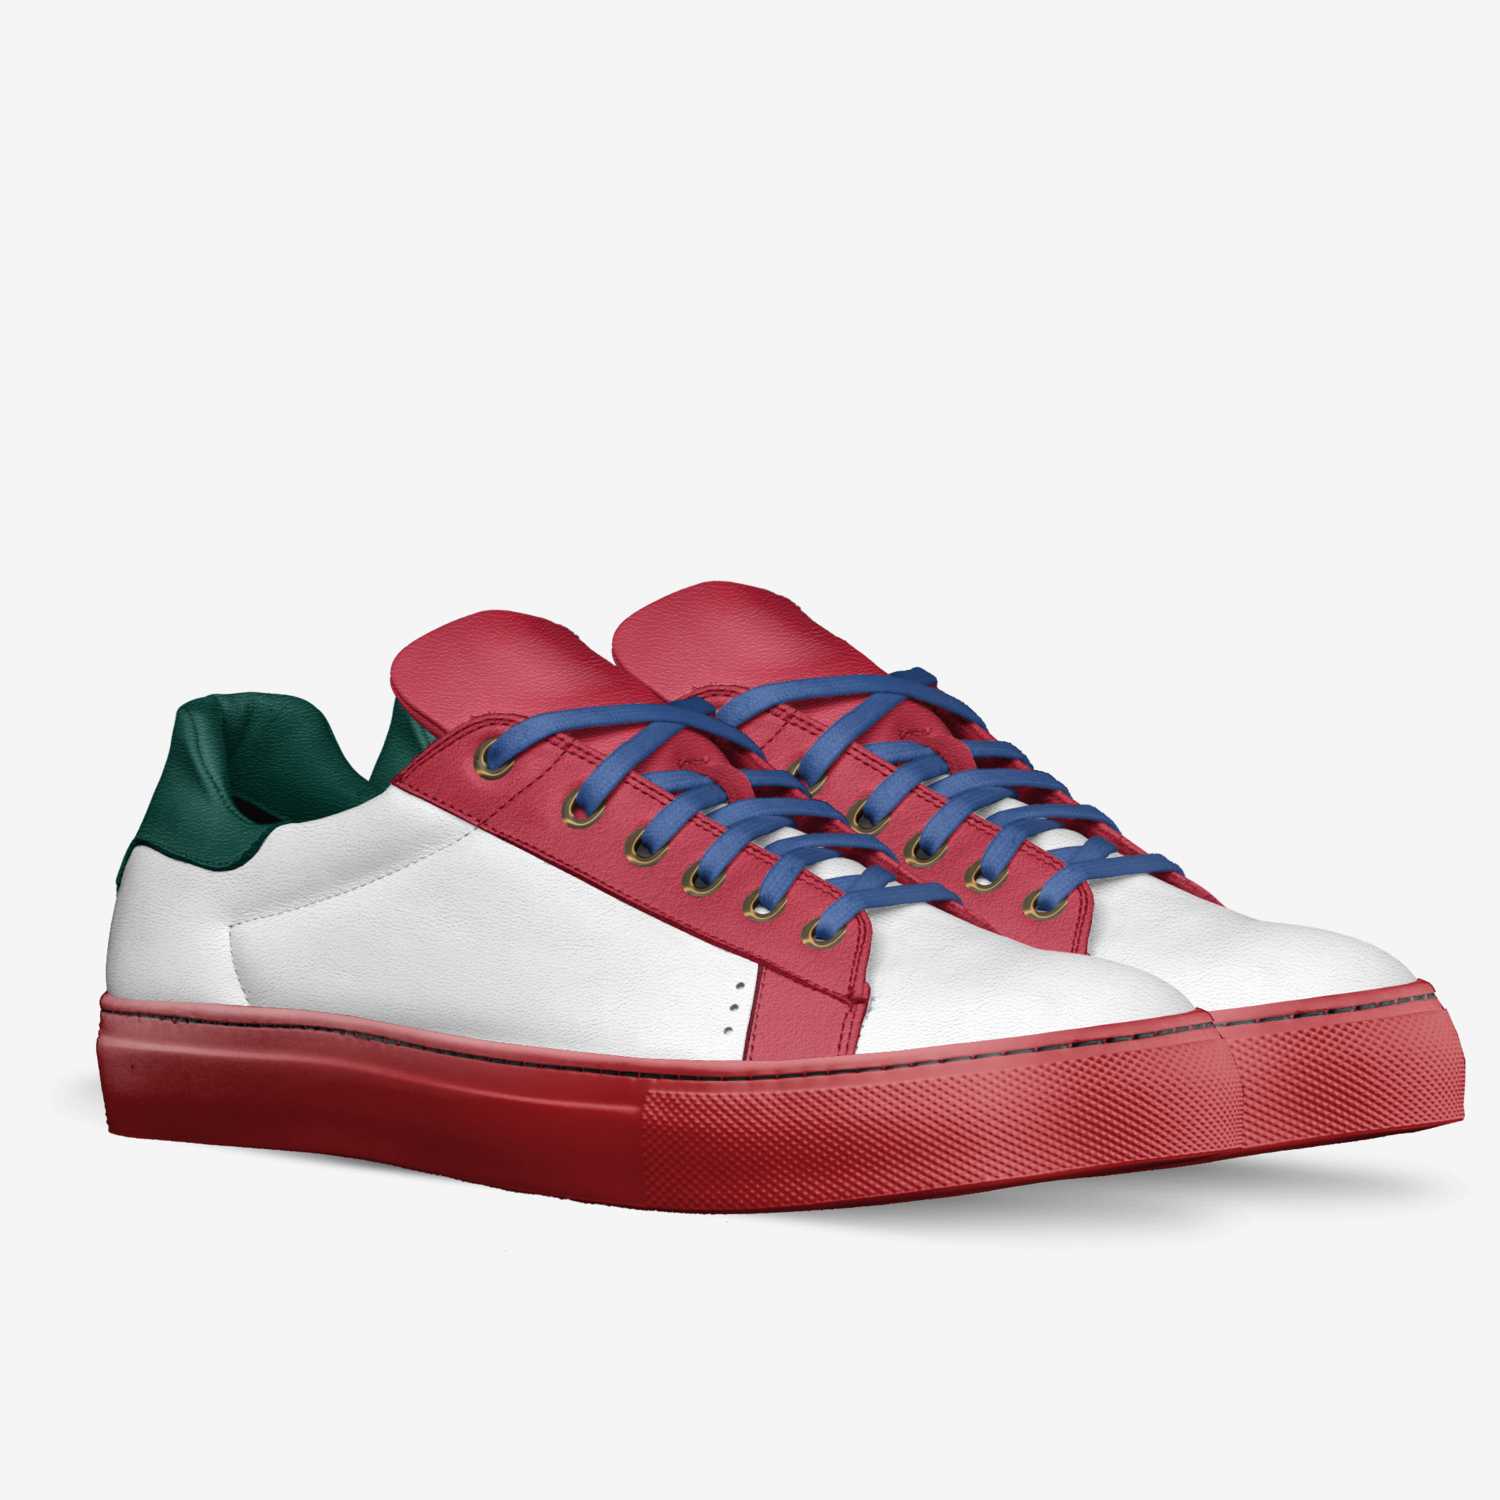 Overlegenhed bomuld Svag Nmd r1 | A Custom Shoe concept by Jfjfh Jfjfjf